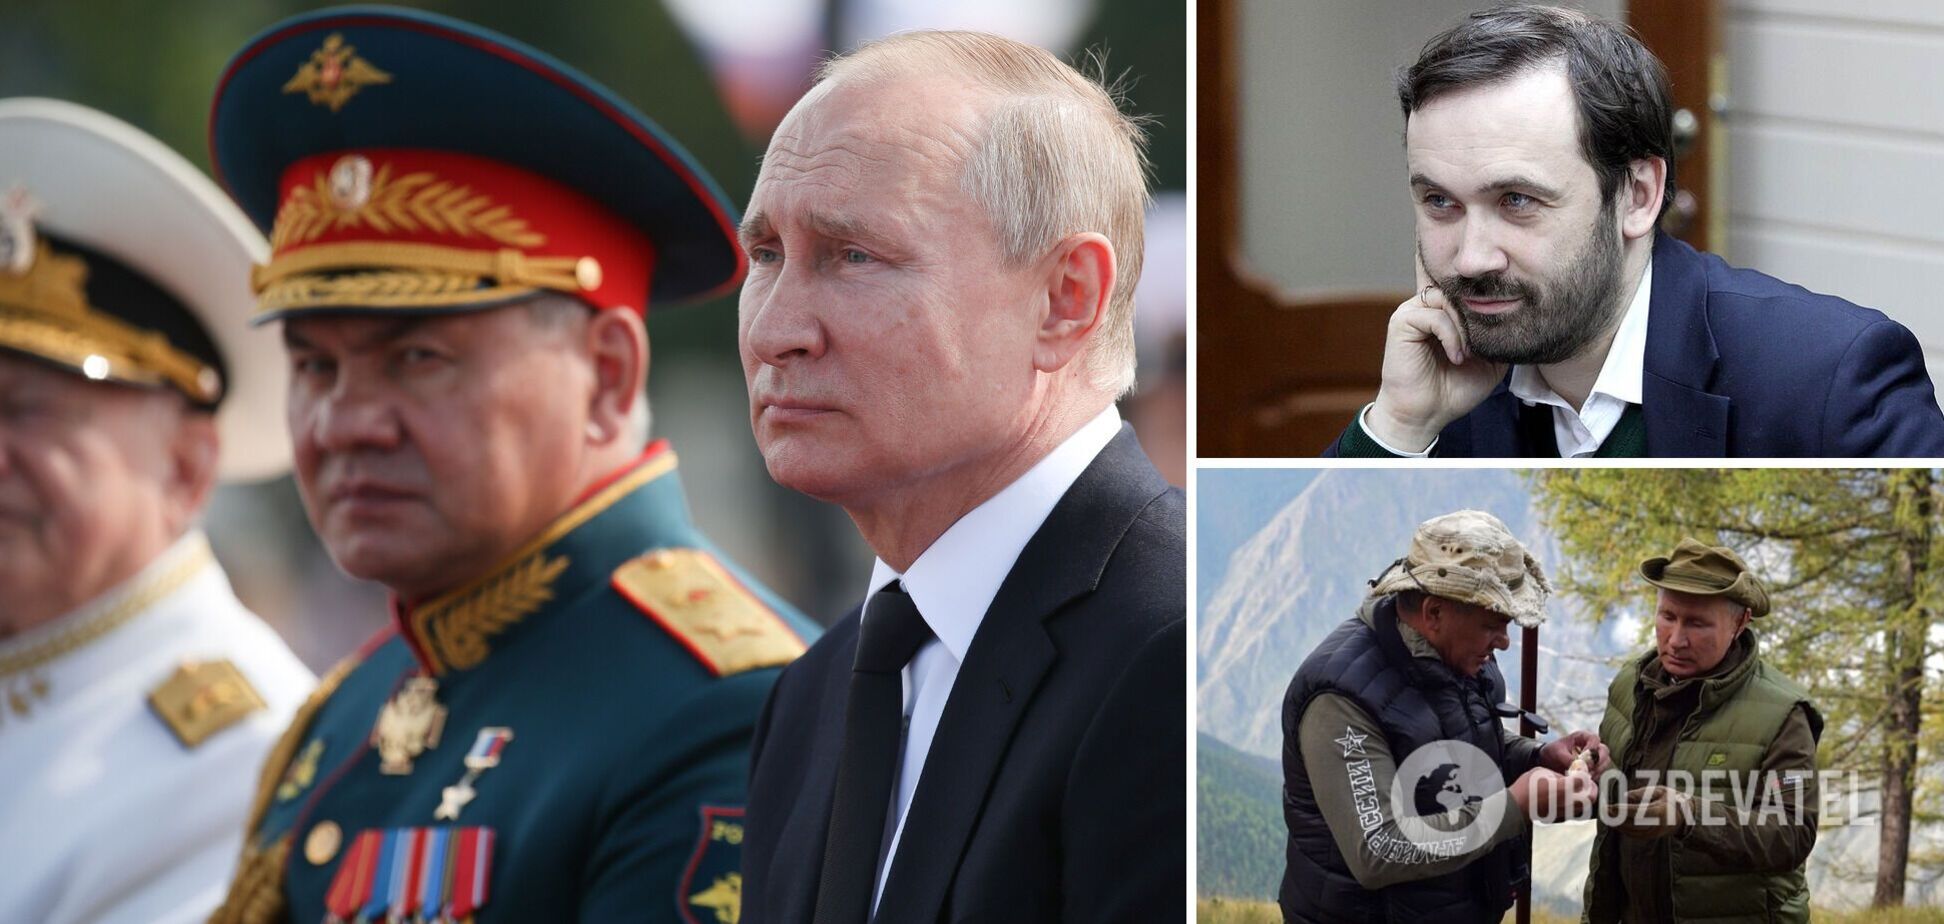 Пономарев: убить Путина – не проблема, особенно в бункере. Интервью